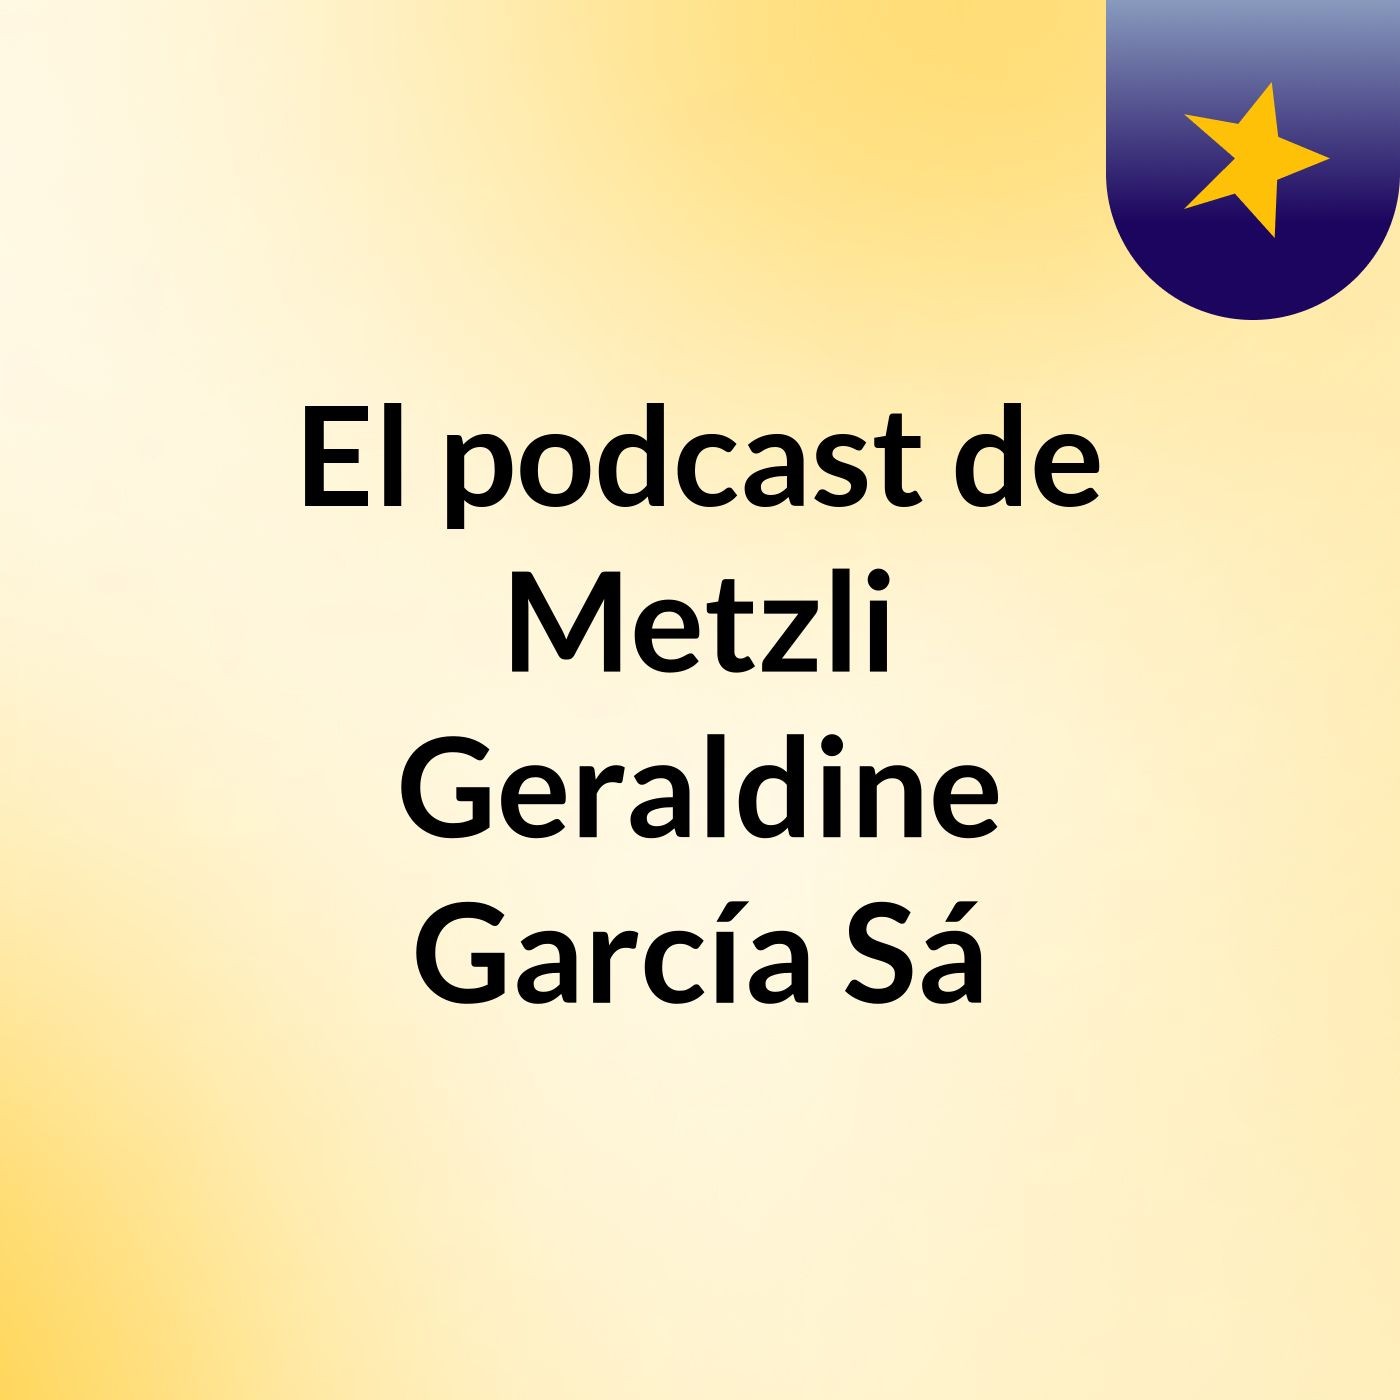 El podcast de Metzli Geraldine García Sá